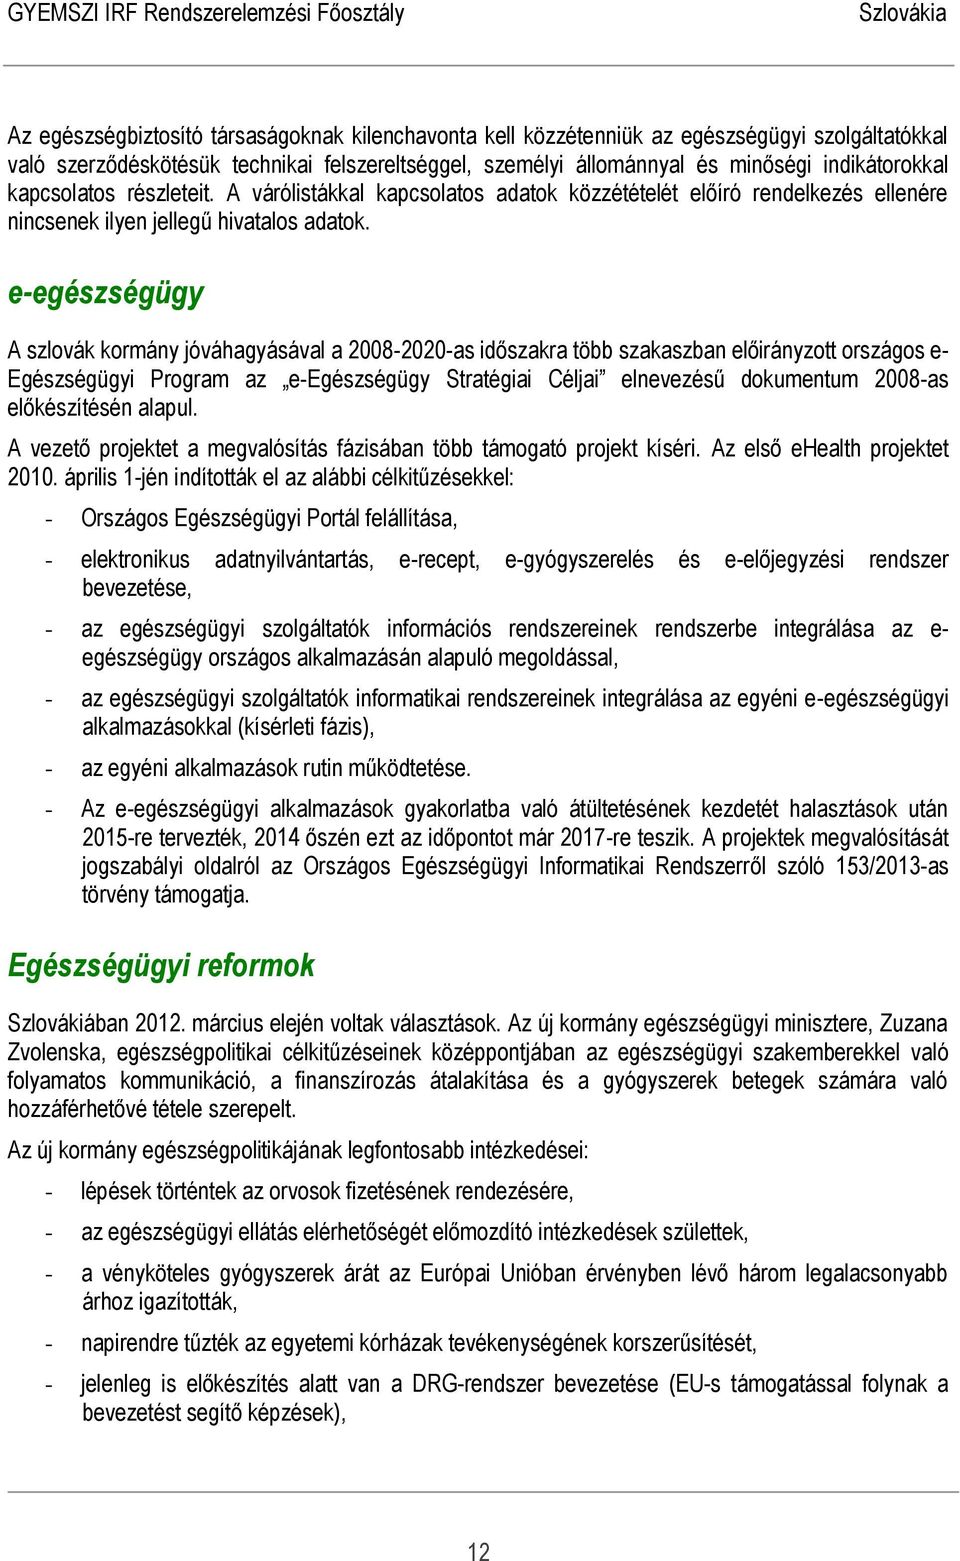 e-egészségügy A szlovák kormány jóváhagyásával a 2008-2020-as időszakra több szakaszban előirányzott országos e- Egészségügyi Program az e-egészségügy Stratégiai Céljai elnevezésű dokumentum 2008-as